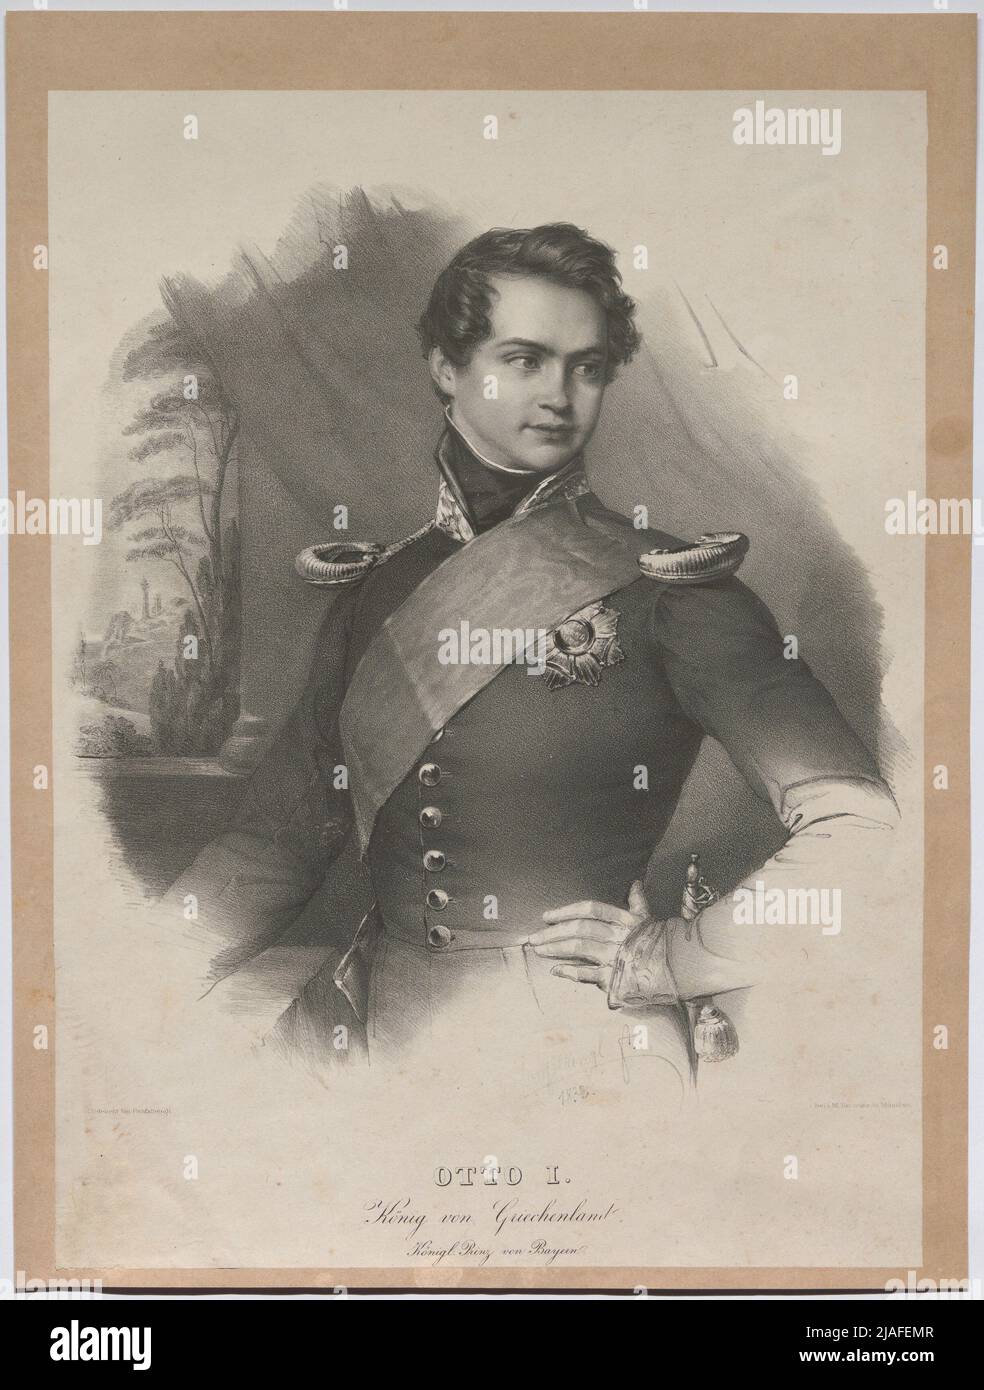 Otto I. Rey de Grecia, Königl. Príncipe de Baviera. '. Franz Hanfstaengl: Otto I., Rey de Grecia, Príncipe Real de Baviera, 1832. Franz Seraph Hanfstaengl (Hanfstängl) (1804-1877), Artista Foto de stock